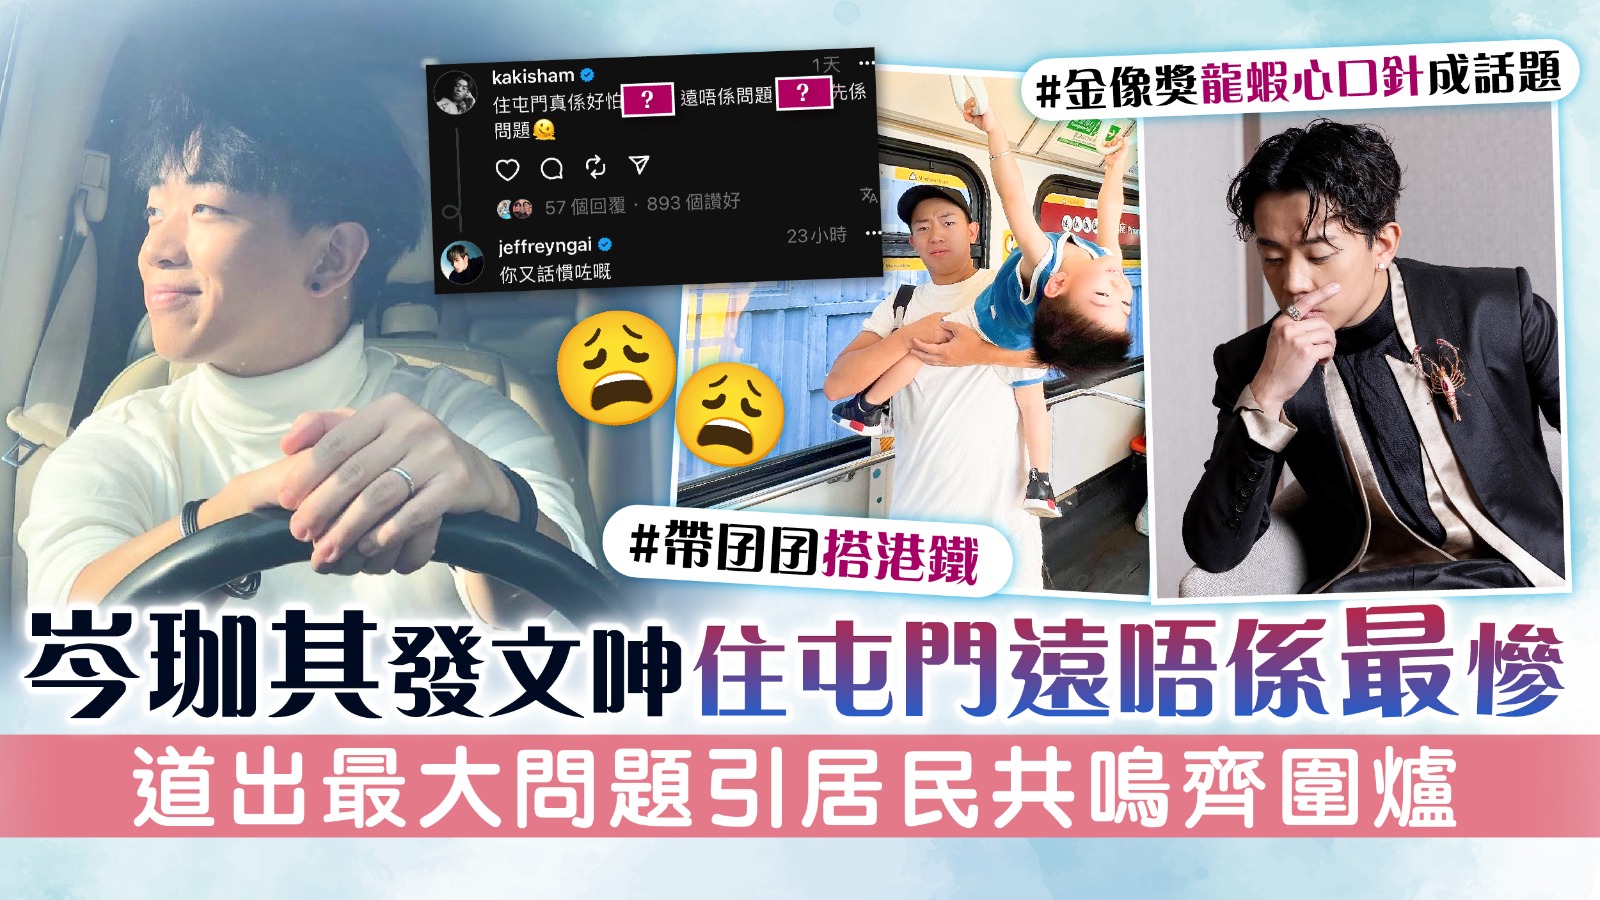 Shun Jiaqi a publié un article dans lequel il se plaint que vivre à Tuen Mun est loin d’être le pire. Il a souligné le plus gros problème et a trouvé un écho auprès des habitants de Hong Kong : la recherche de bons endroits à Hong Kong.